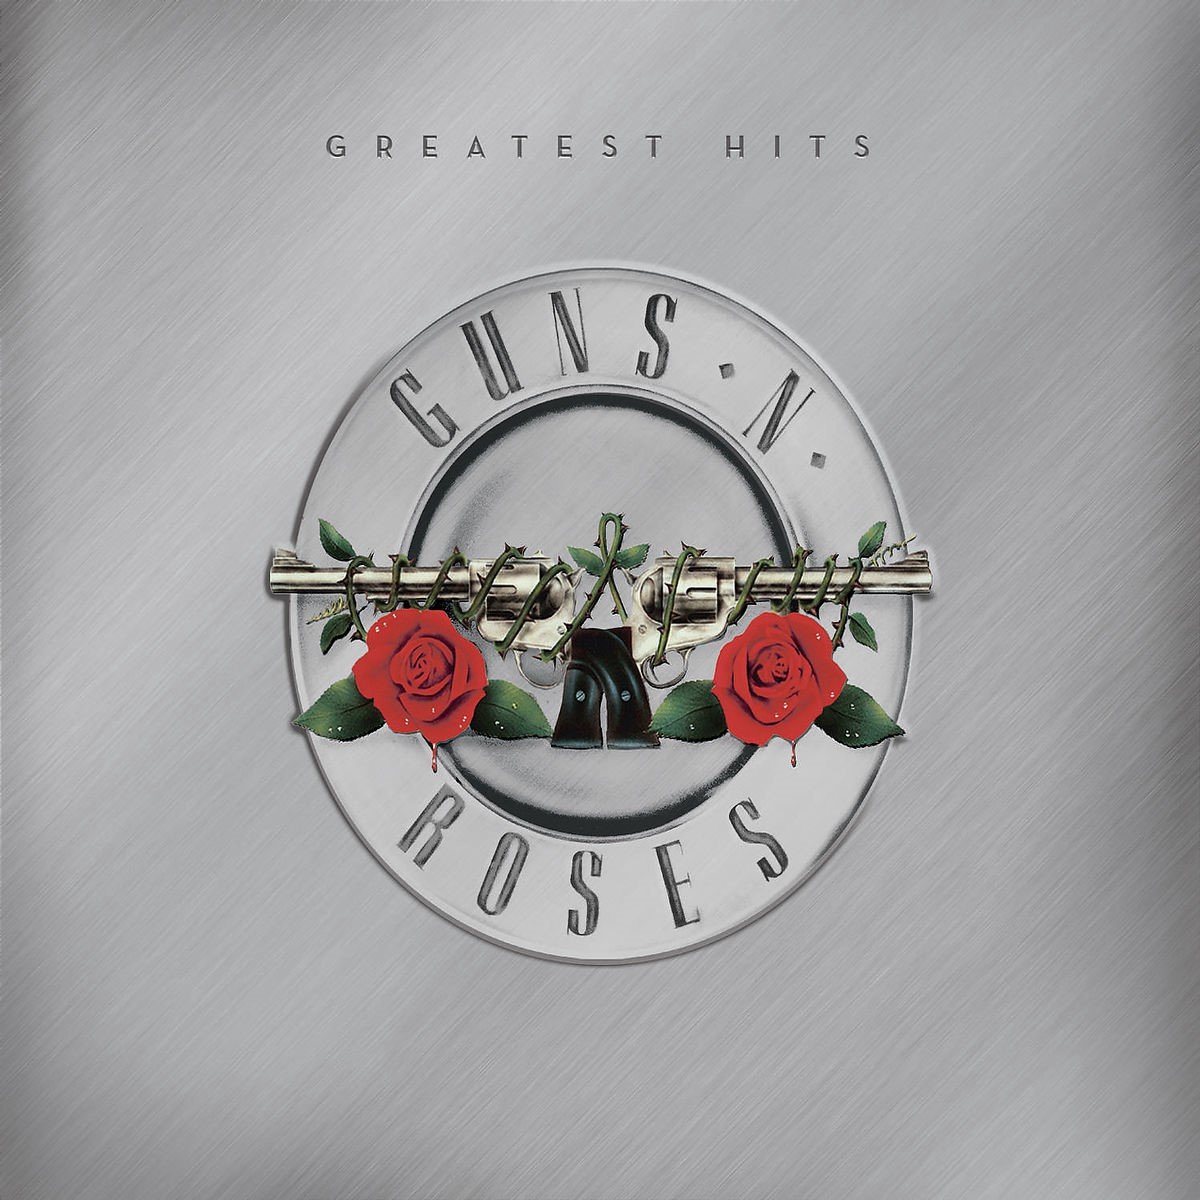 Guns N' Roses - Greatest Hits (CD) - Guns N' Roses